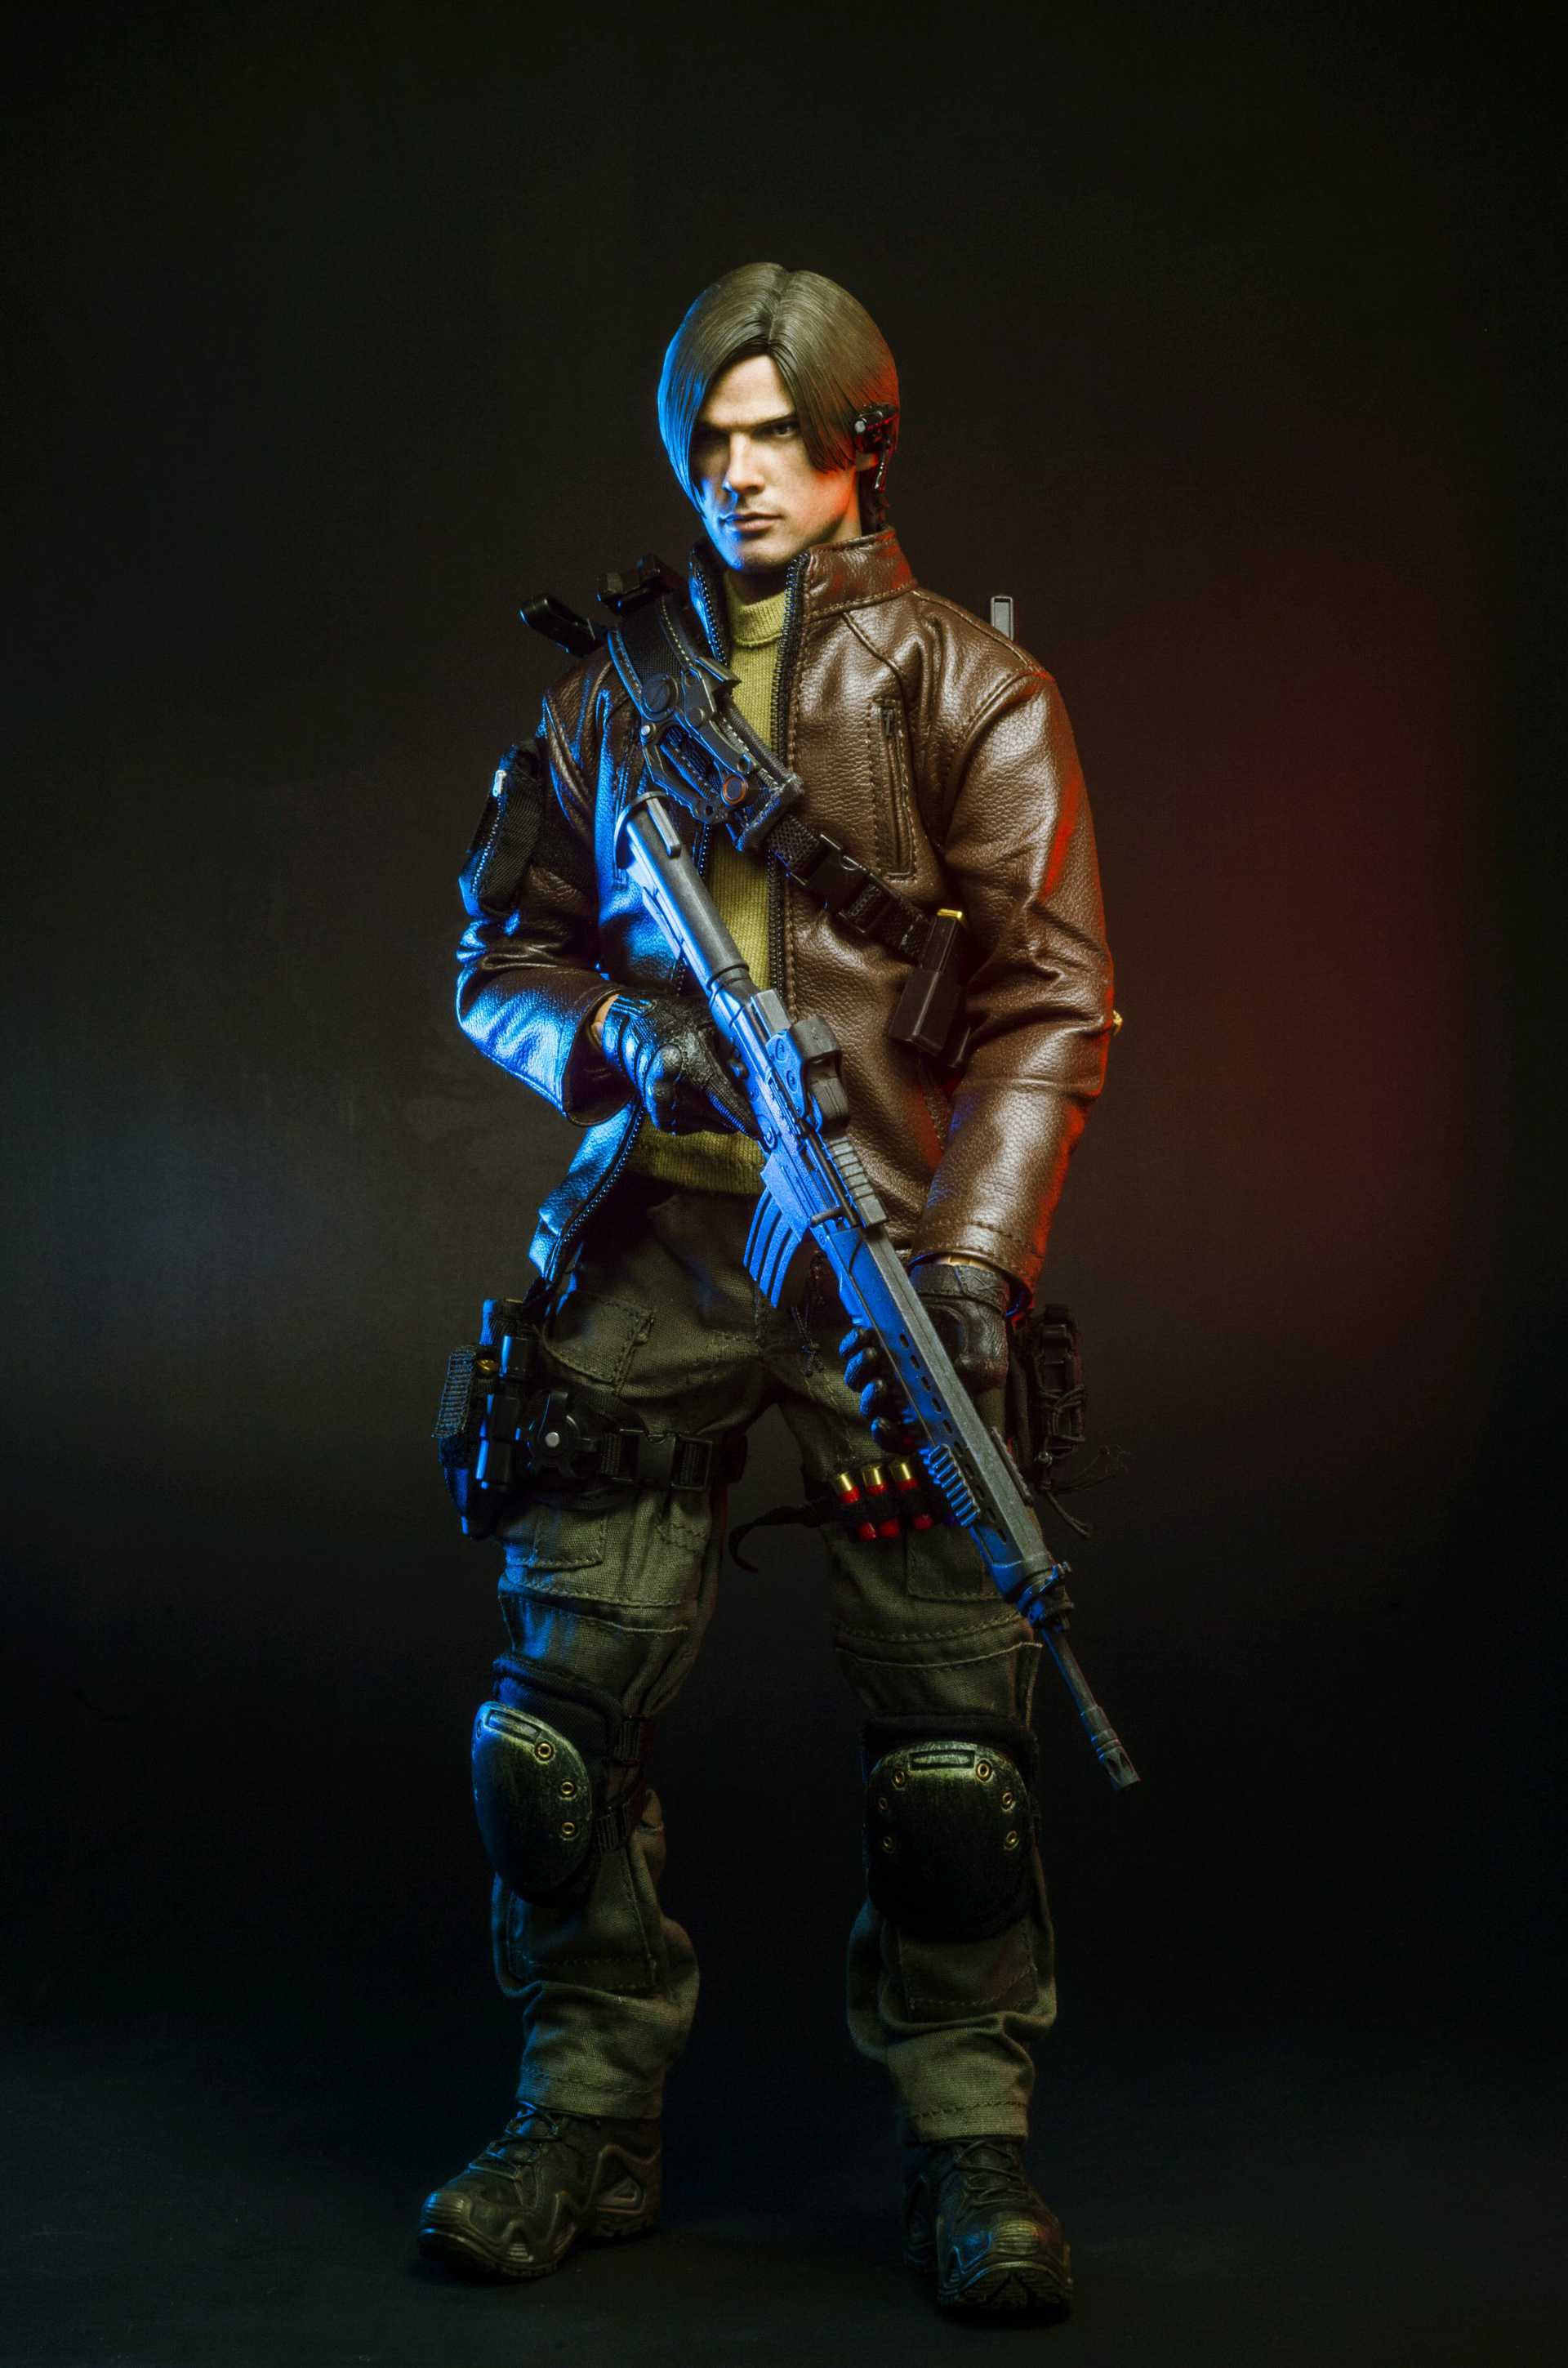 Resident Evil 6 - Ada Wong Hot Toys - Machinegun